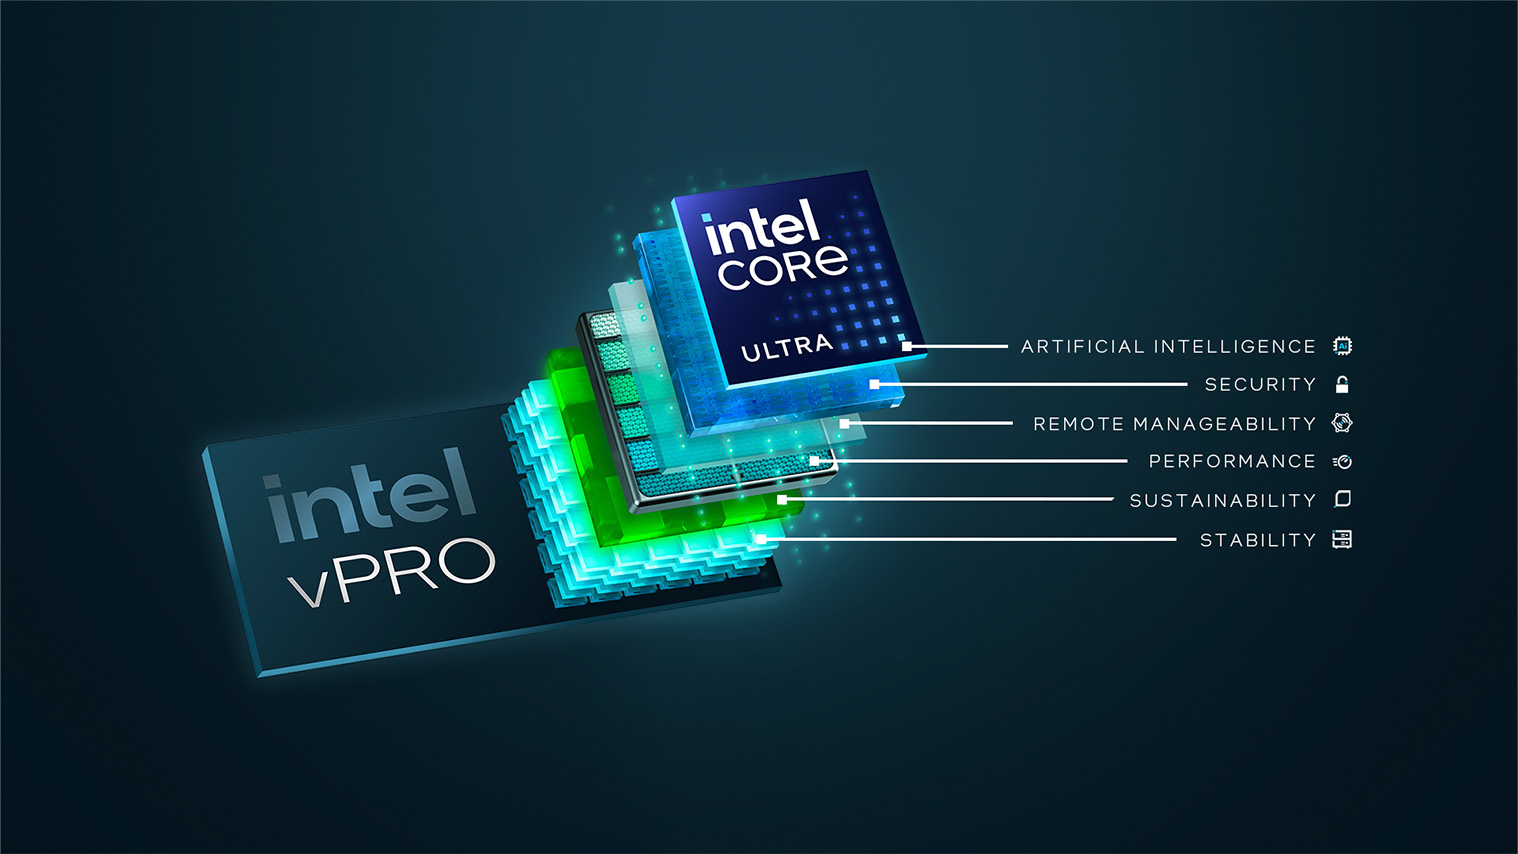 Intel VPro + Core Ultra